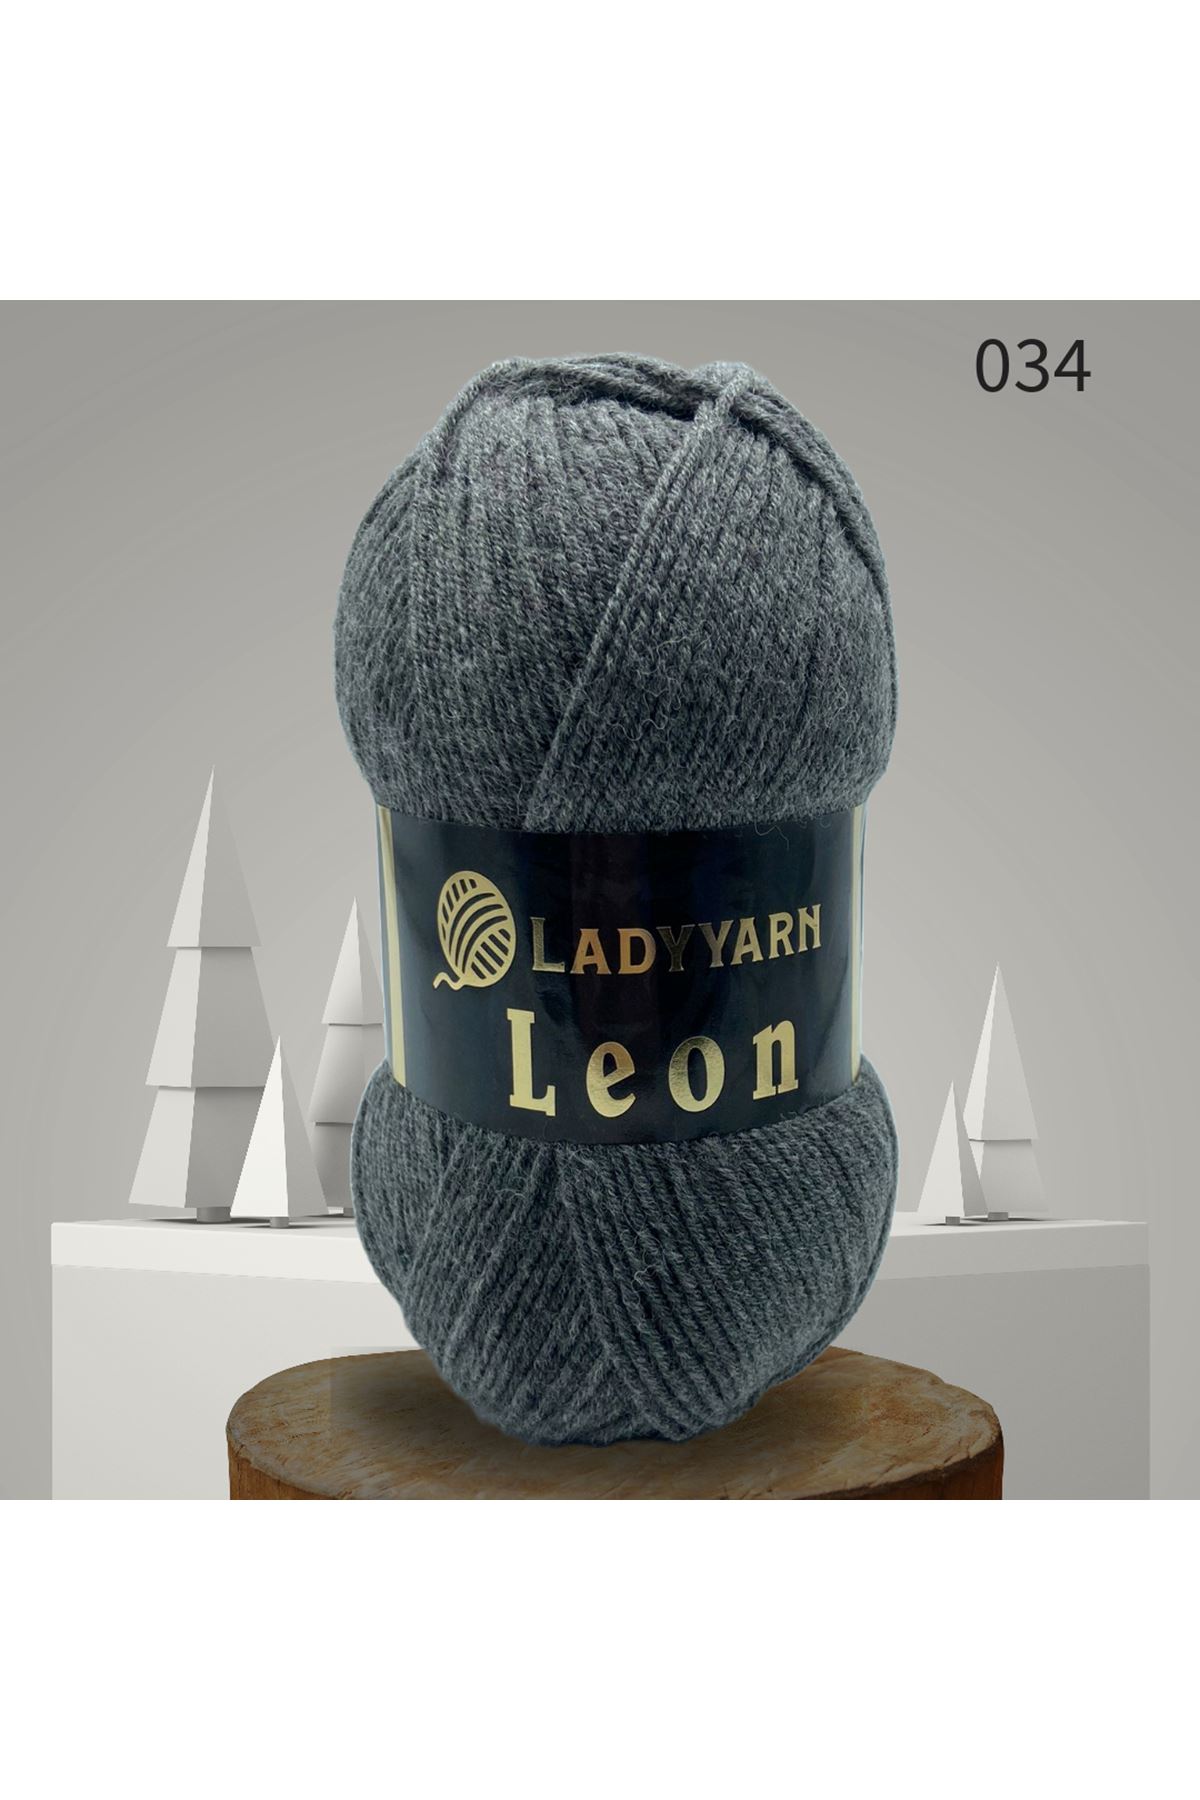 Lady Yarn Leon %49 Yünlü 034 Koyu Gri